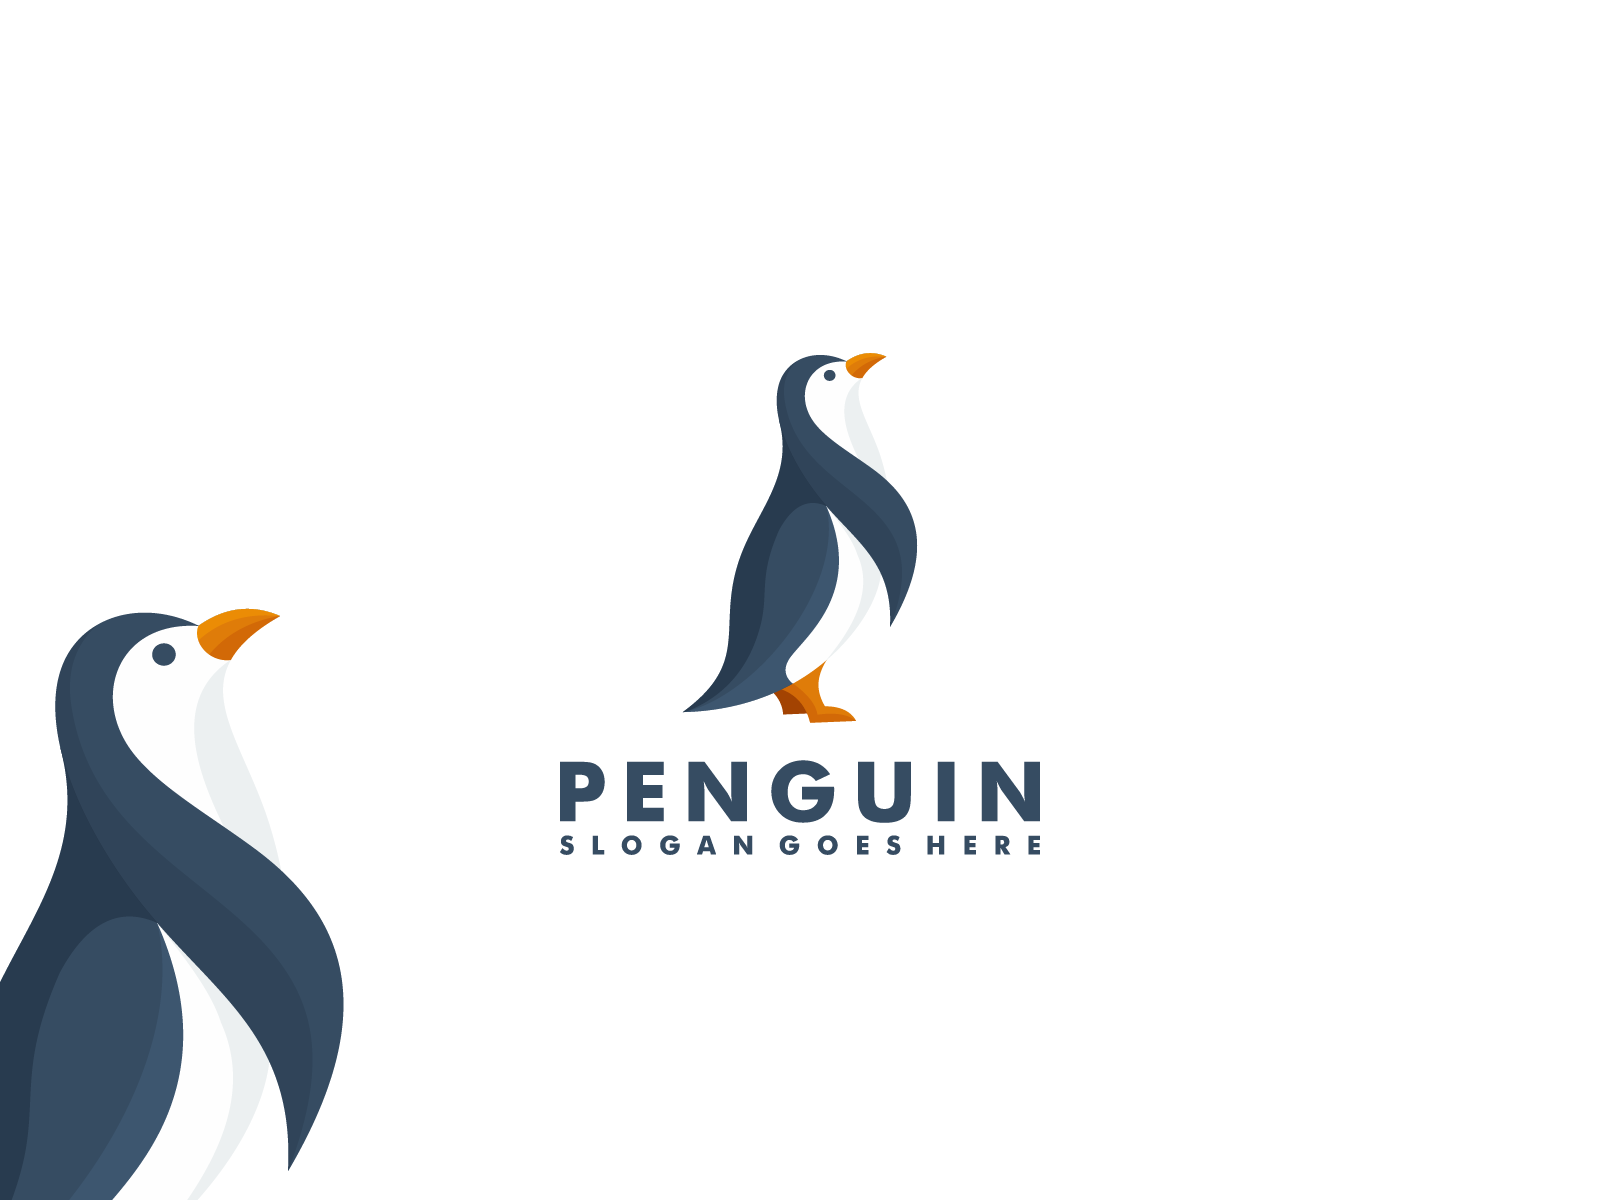 Penguin logo design by mouze_art on Dribbble